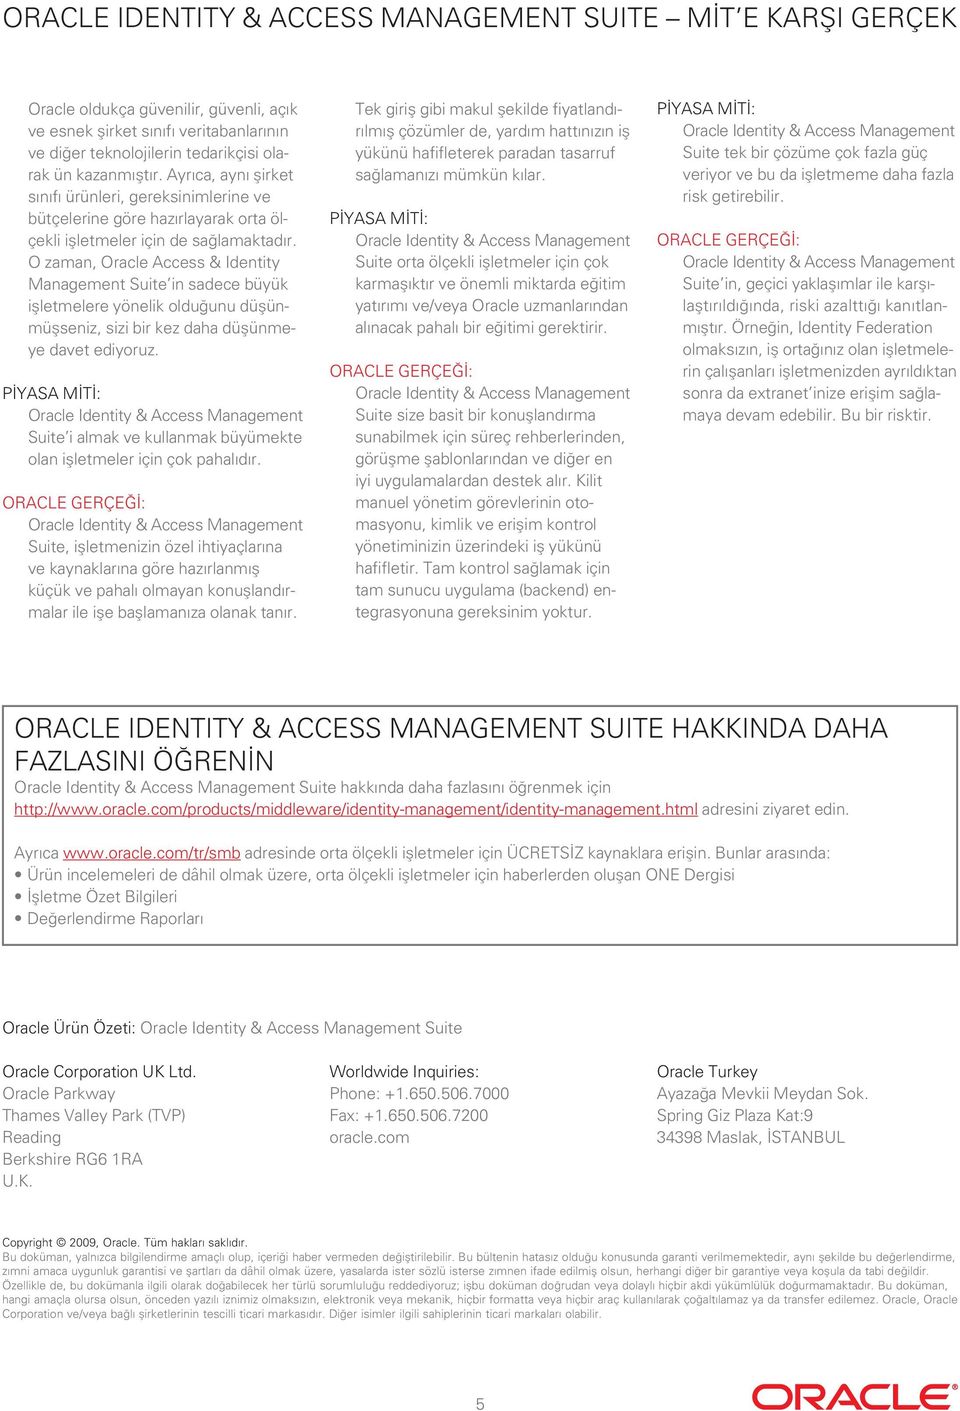 O zaman, Oracle Access & Identity Management Suite in sadece büyük işletmelere yönelik olduğunu düşünmüşseniz, sizi bir kez daha düşünmeye davet ediyoruz.